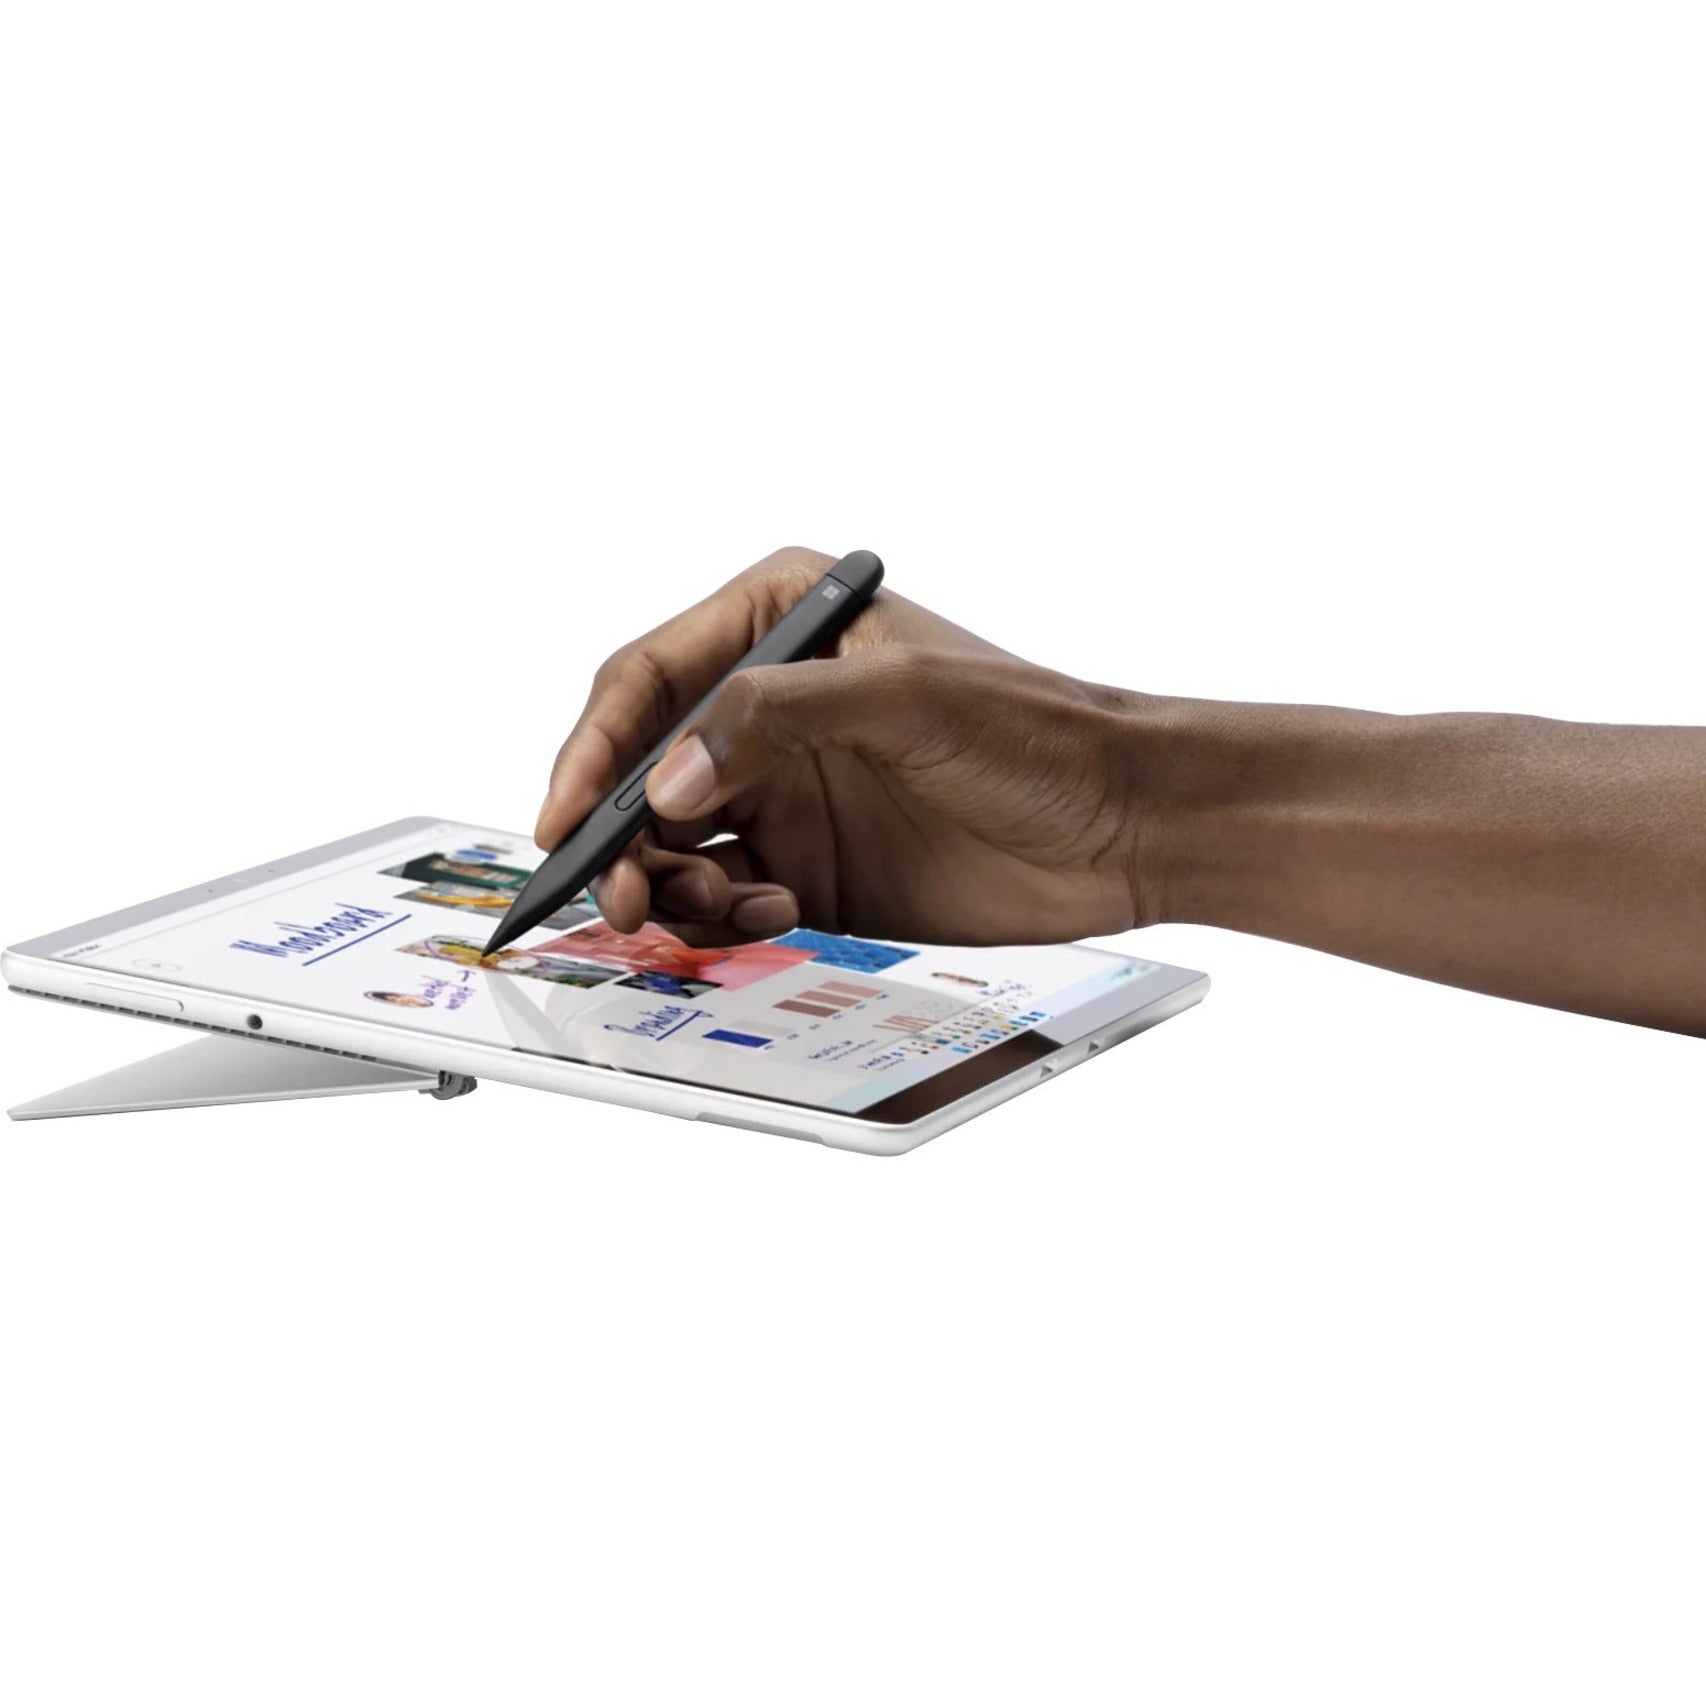 マイクロソフト 8WX-00001 Surface Slim Pen 2 スタイラス、Bluetooth、4096 圧力レベル、15 時間のバッテリー寿命